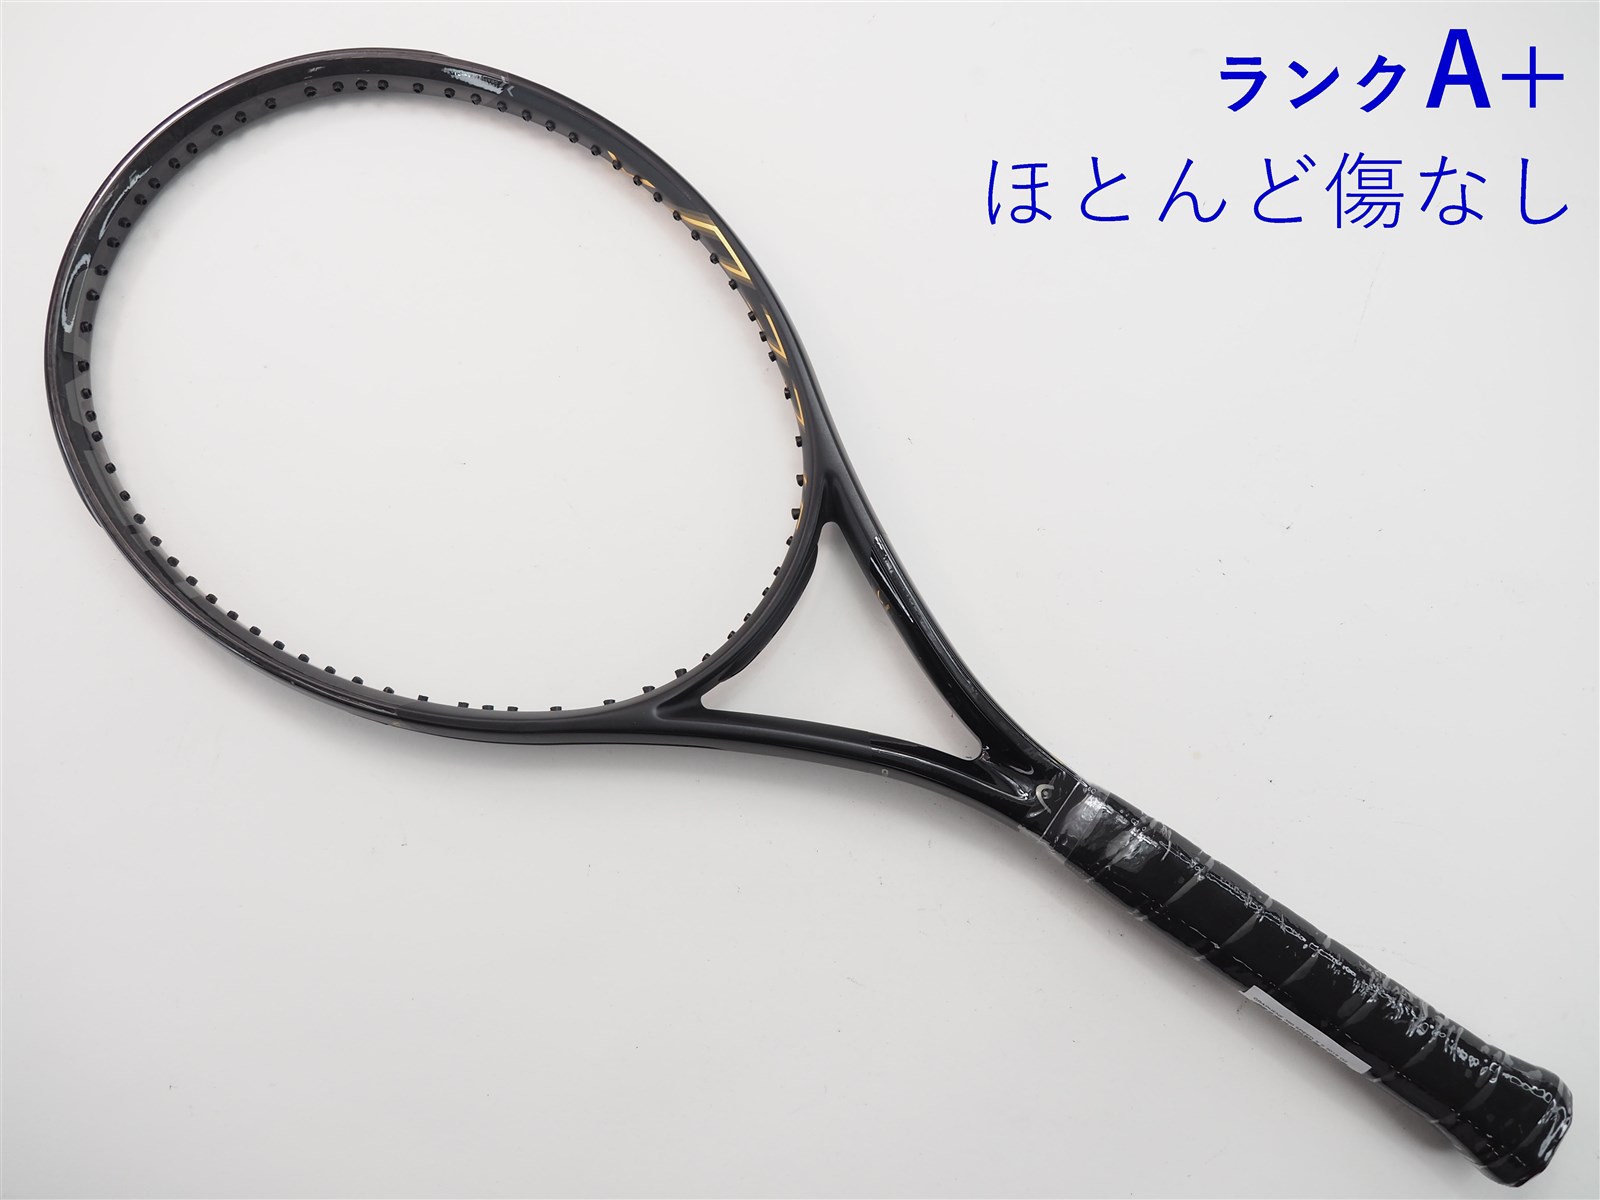 テニスラケット ヘッド グラフィン 360 スピード エス 2018年モデル ...